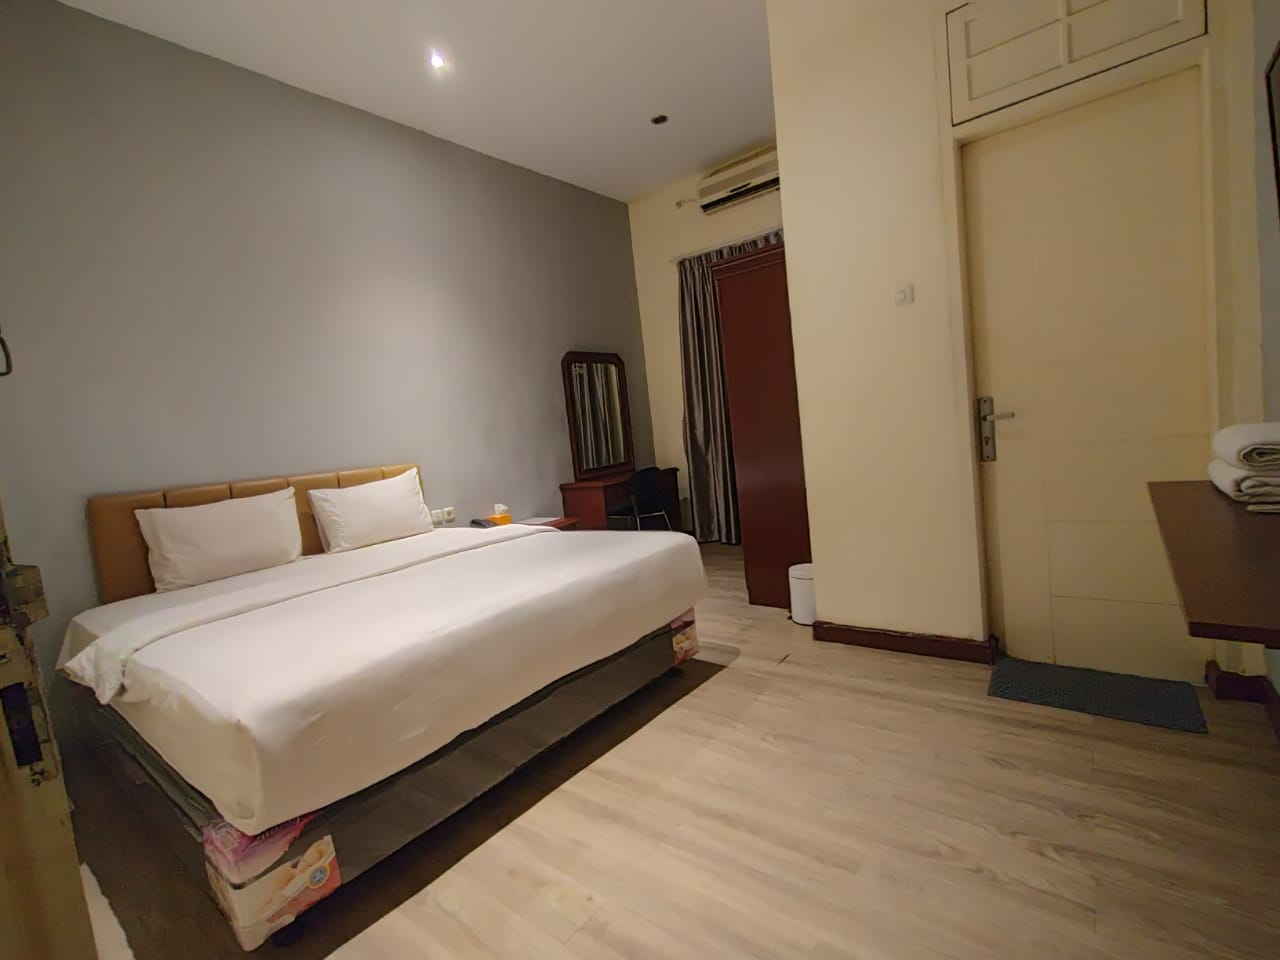 Bedroom 4, Wisma Sudirman Medan, Medan